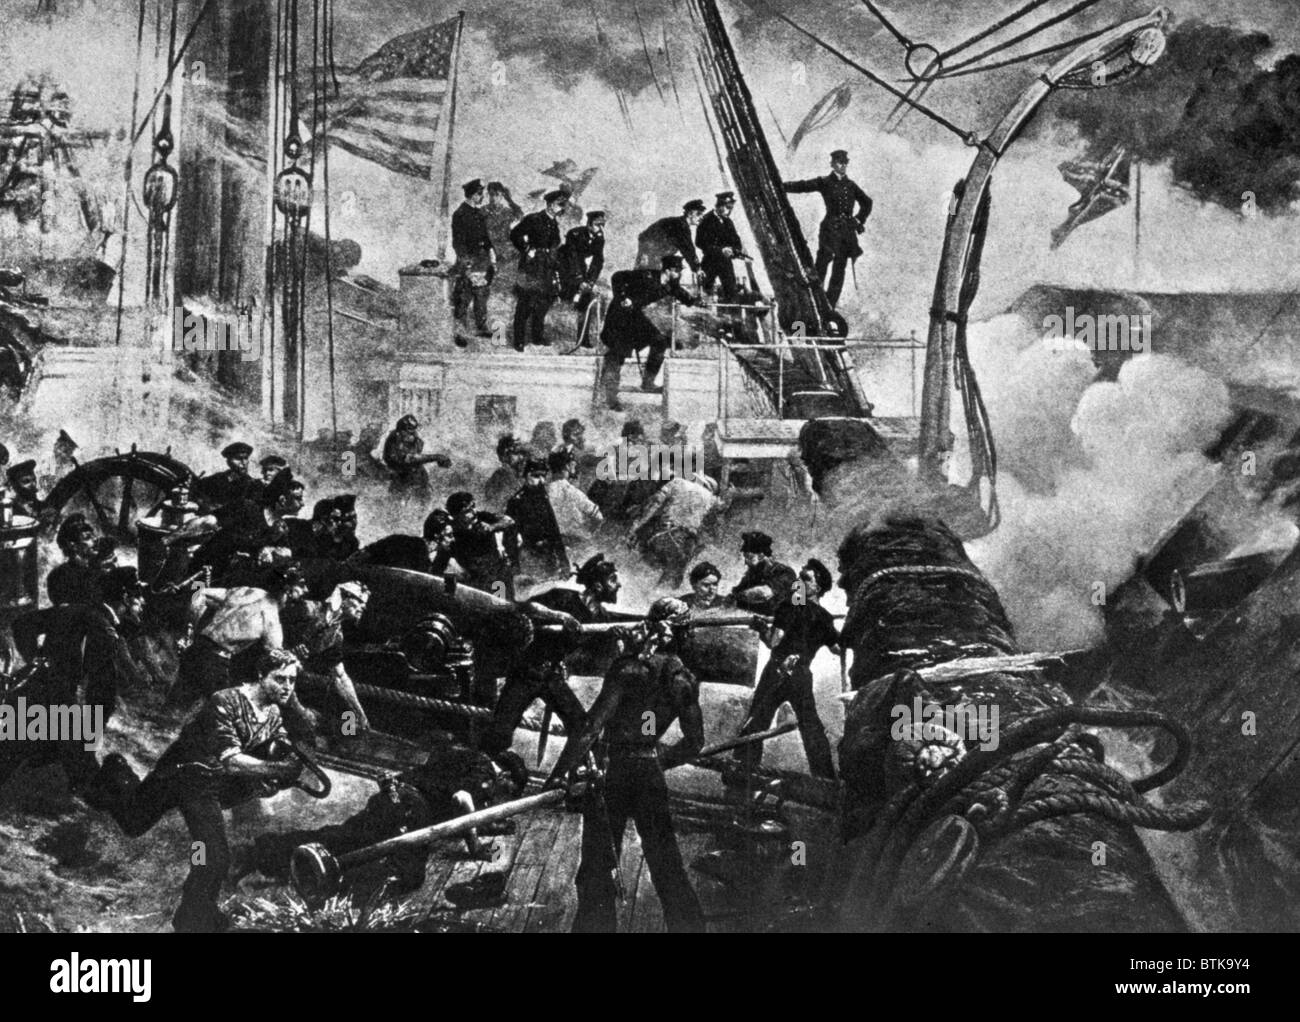 La batalla de Mobile Bay, el Almirante Farragut a bordo del Hartford ordenando 'Damn los torpedos, máxima velocidad por delante!", el 5 de agosto de 1864, del New York Times Foto de stock